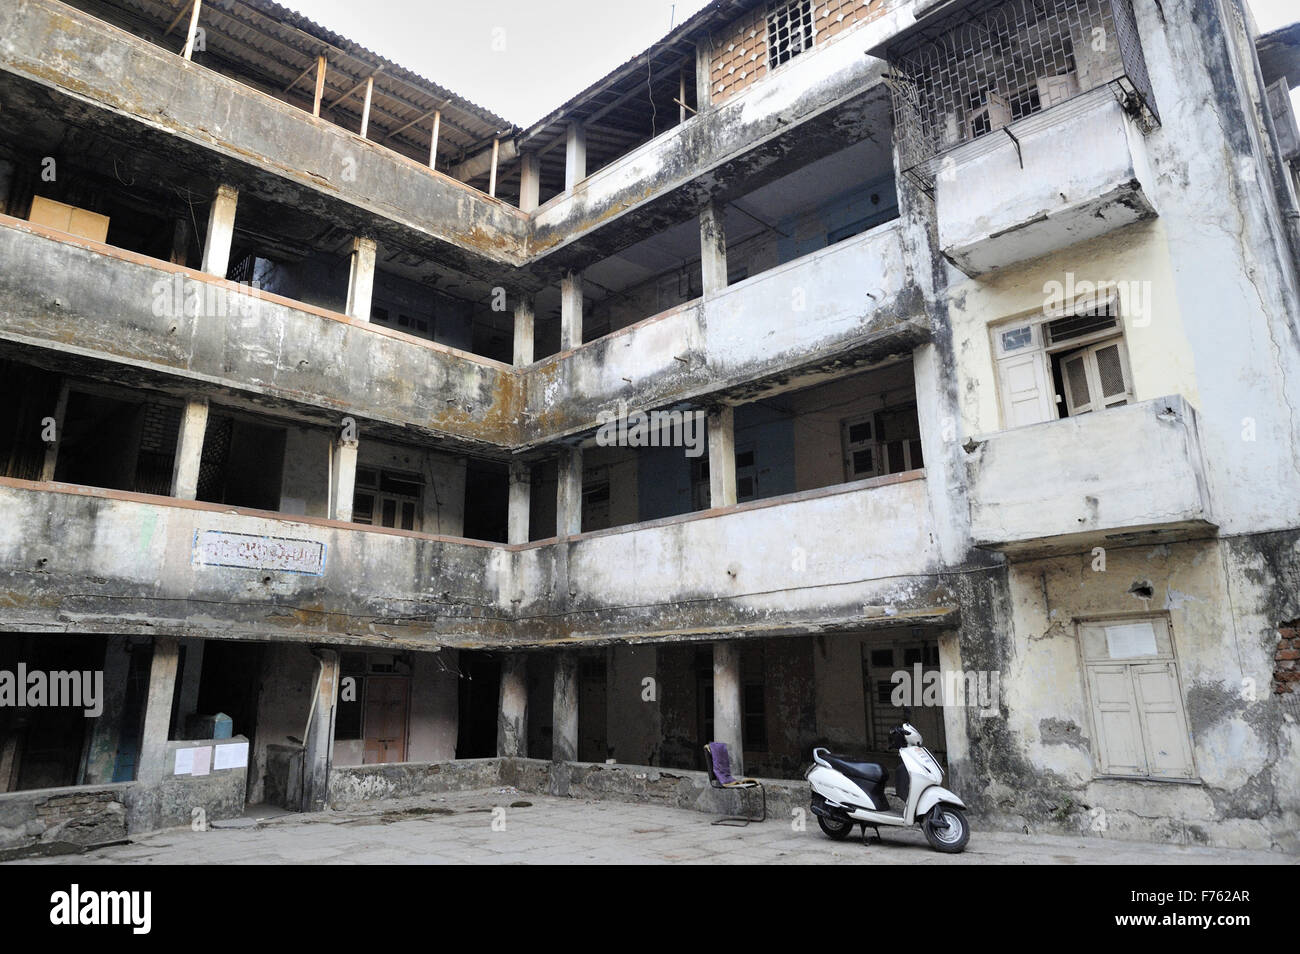 chawl building, ghatkopar, mumbai, maharashtra, india, asia Stock Photo